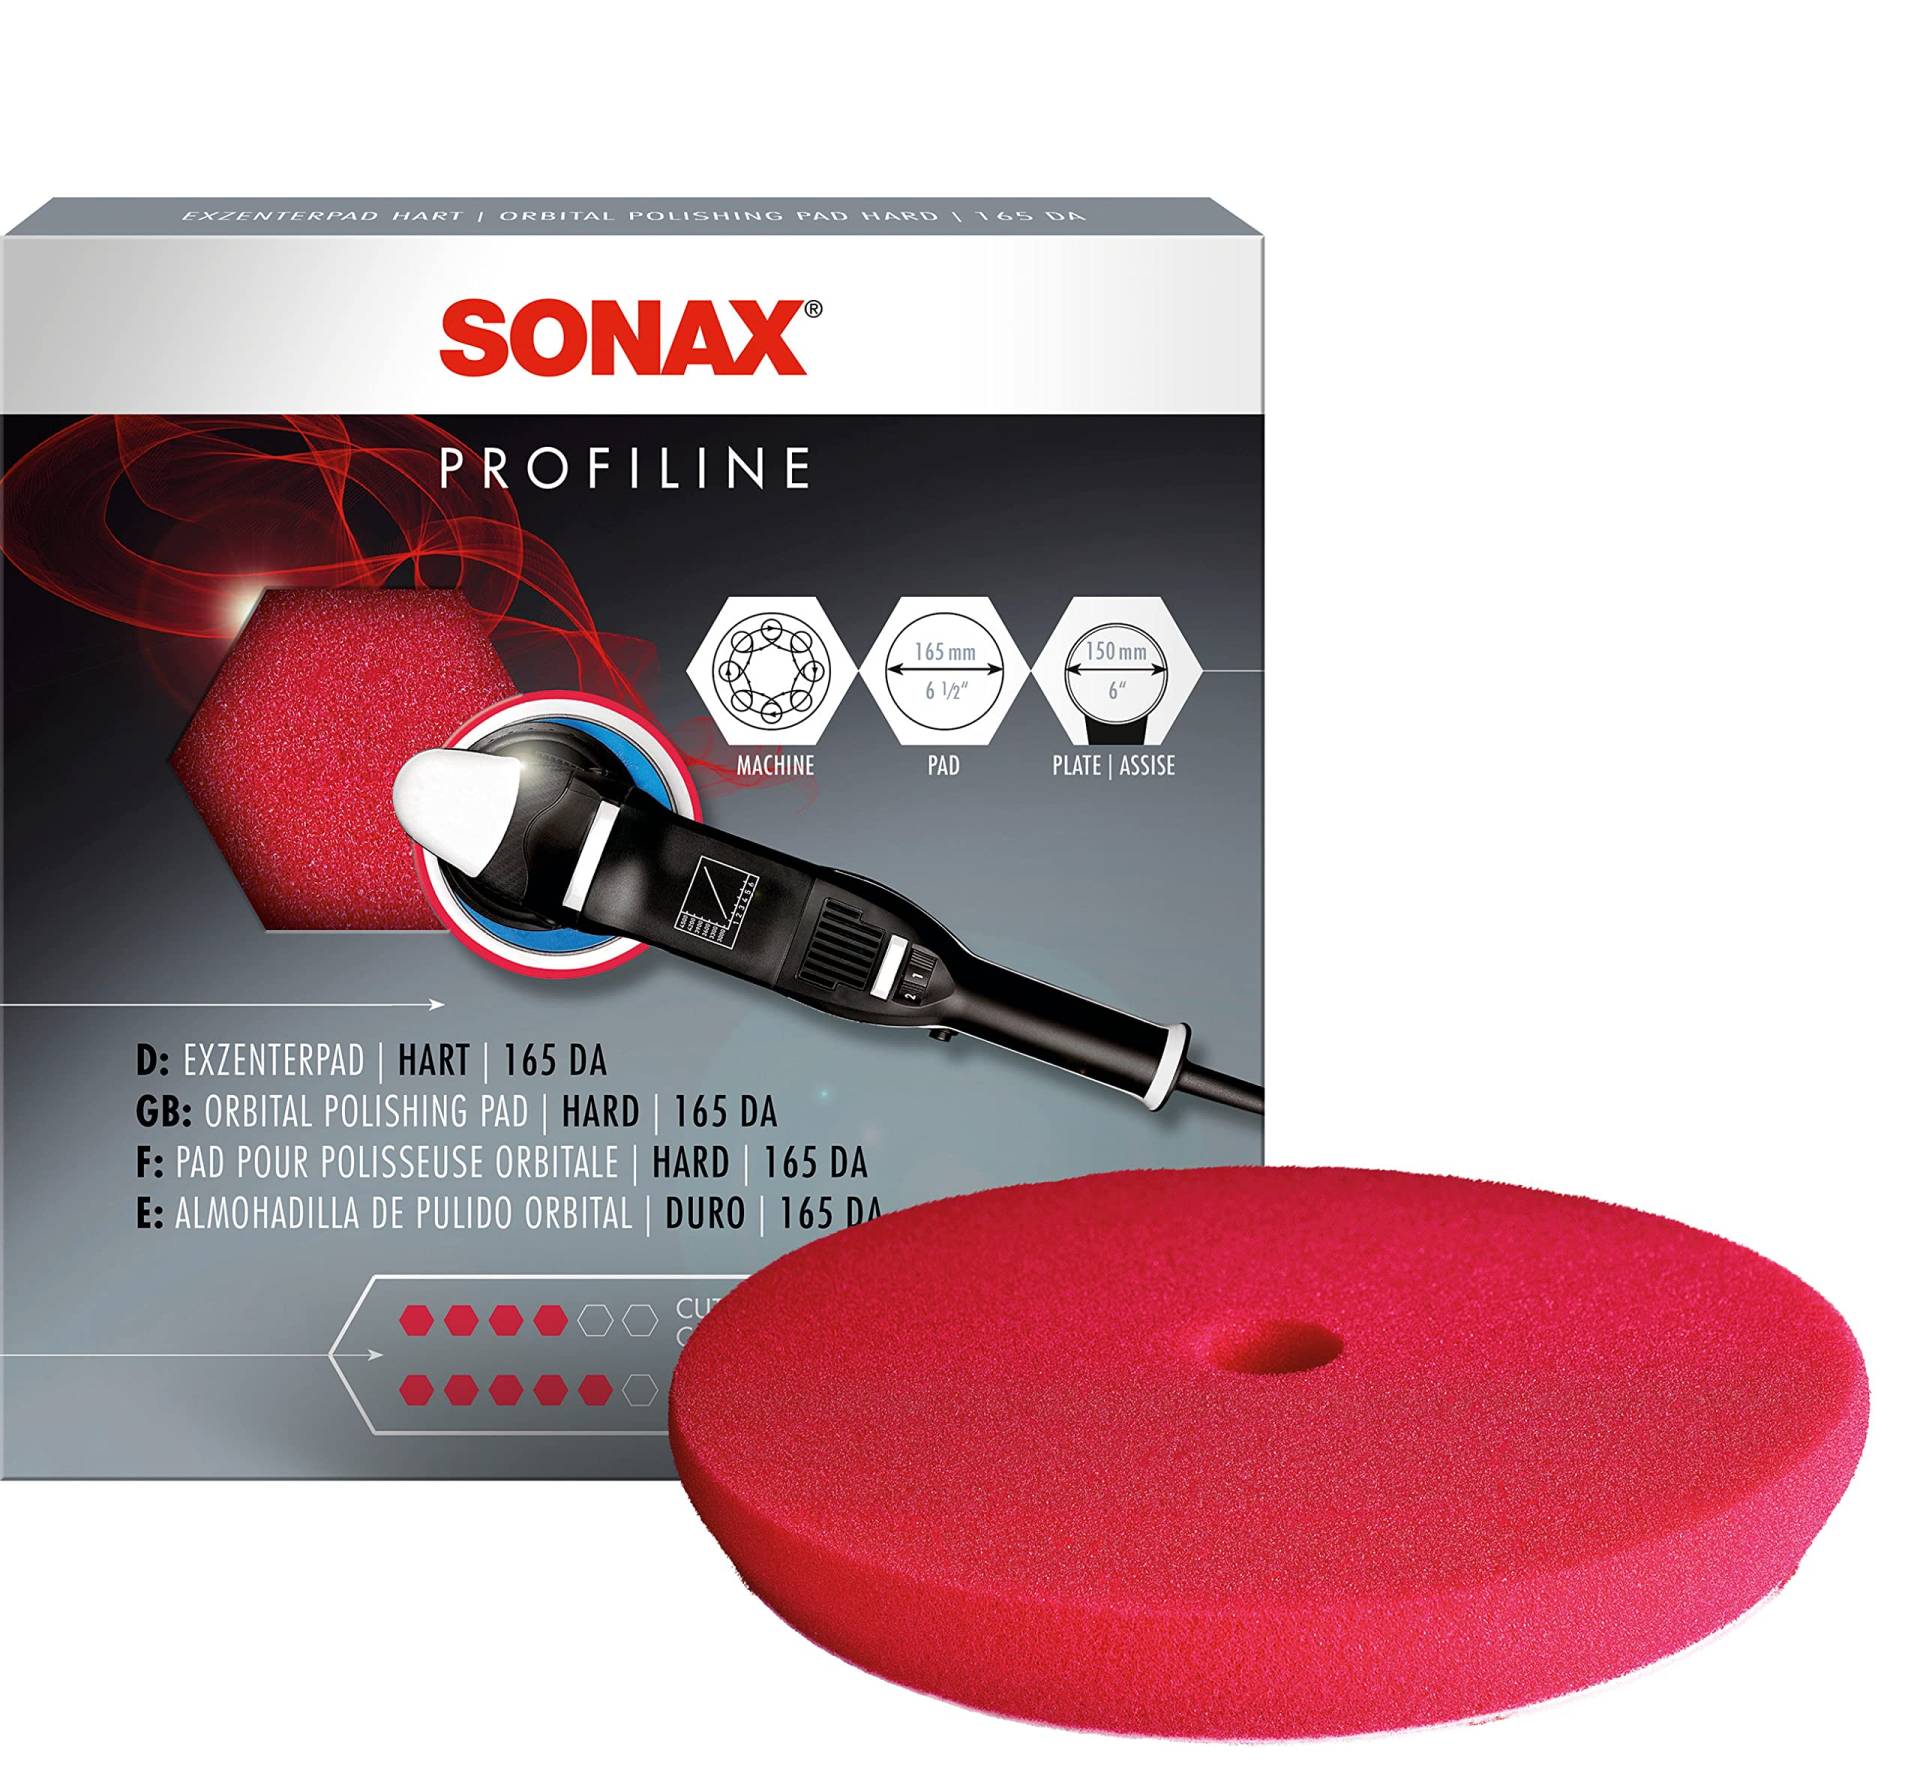 SONAX ExzenterPad hart 165 DA (1 Stück) Polierscheibe für Verwendung im ersten Arbeitsschritt mit Schleifpolitur zur Kratzerentfernung, Art-Nr. 04934410 von SONAX